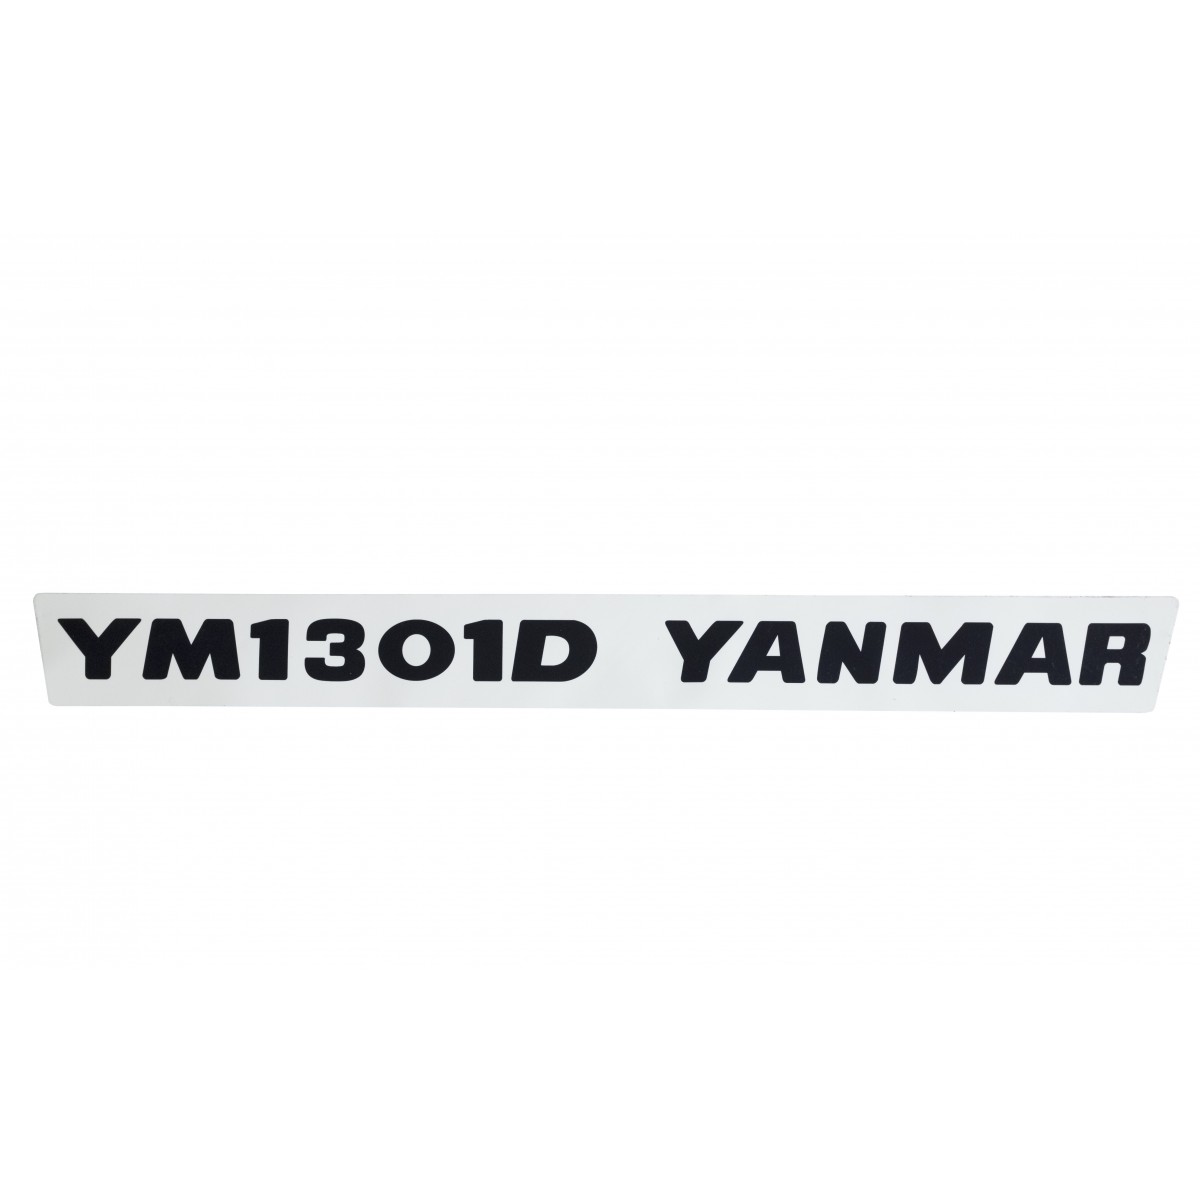 Aufkleber (1) Yanmar YM1301D